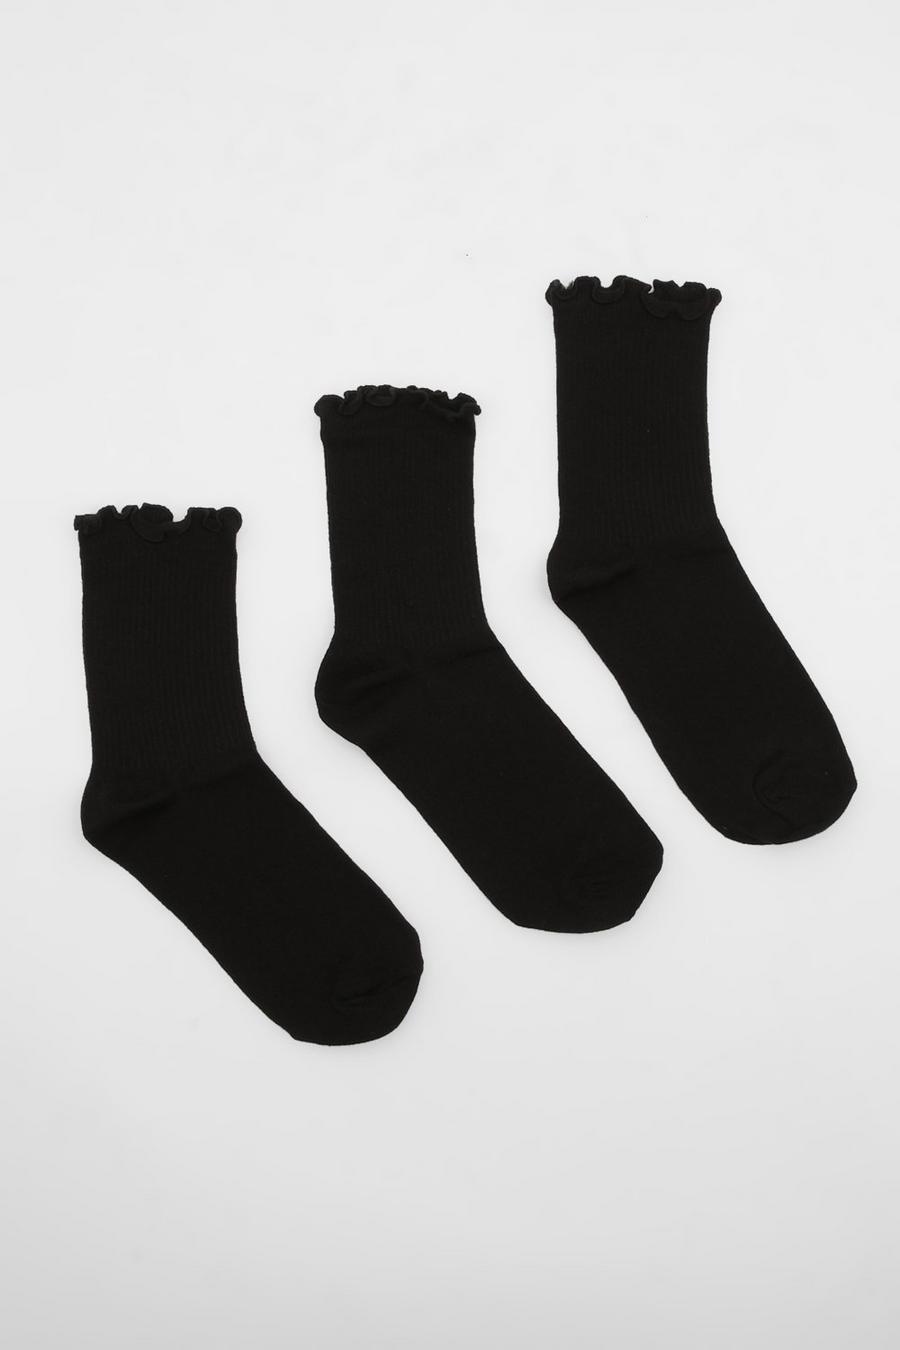 Pack de 3 pares de calcetines negros con ribete